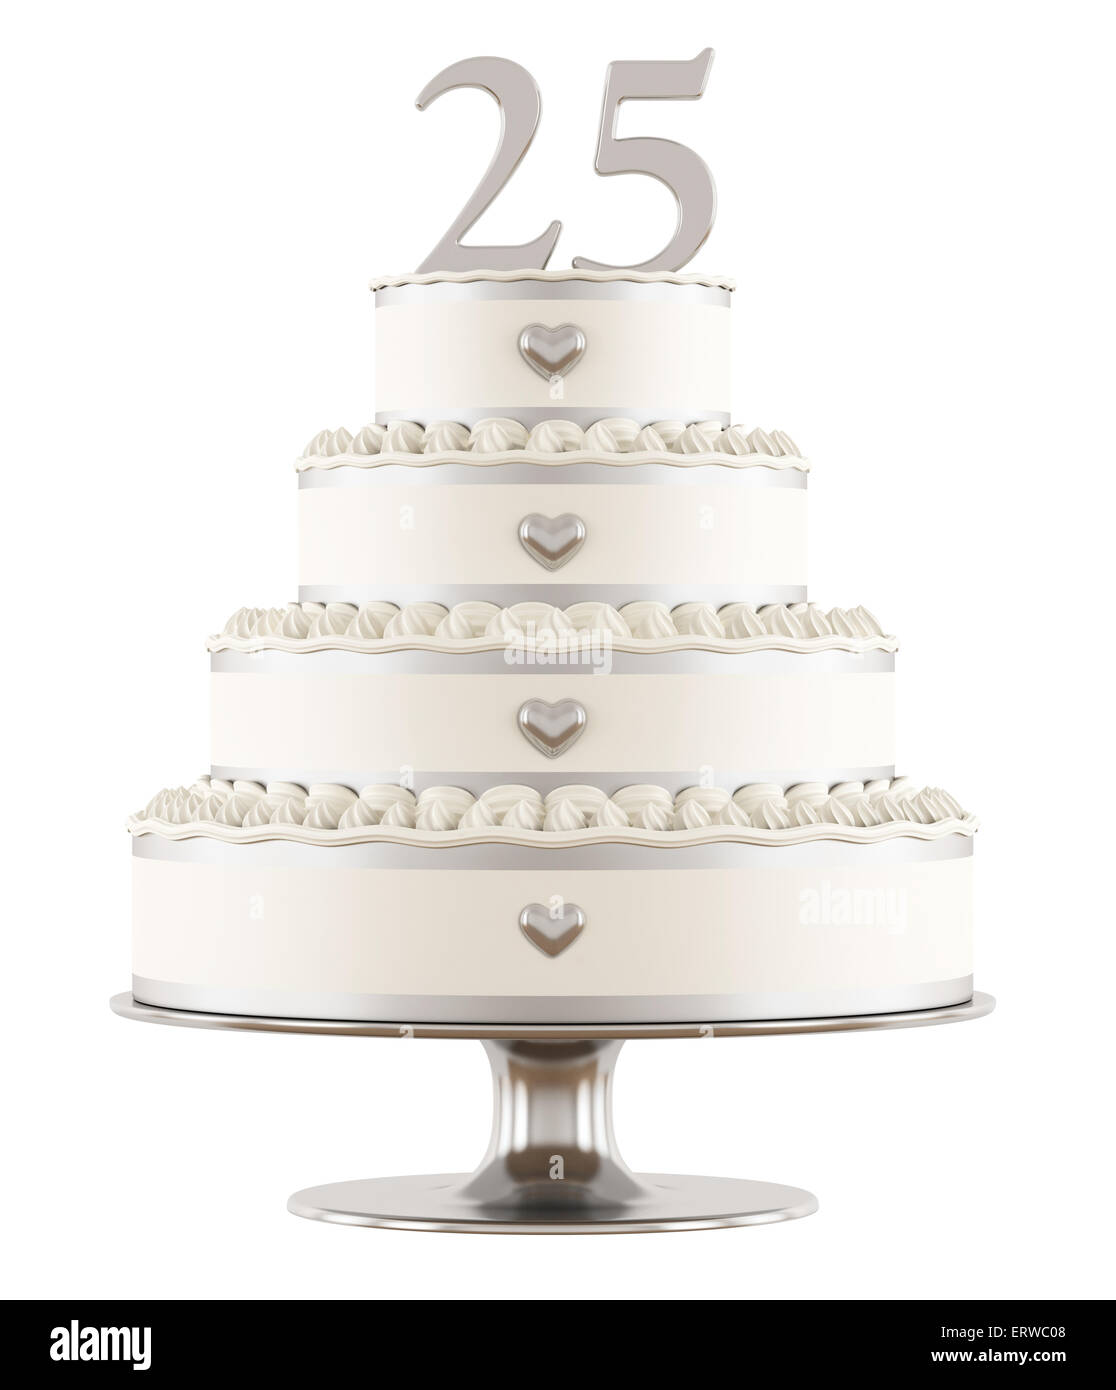 Silberne Hochzeit Kuchen isoliert auf weiss - 3DRendering Stockfoto